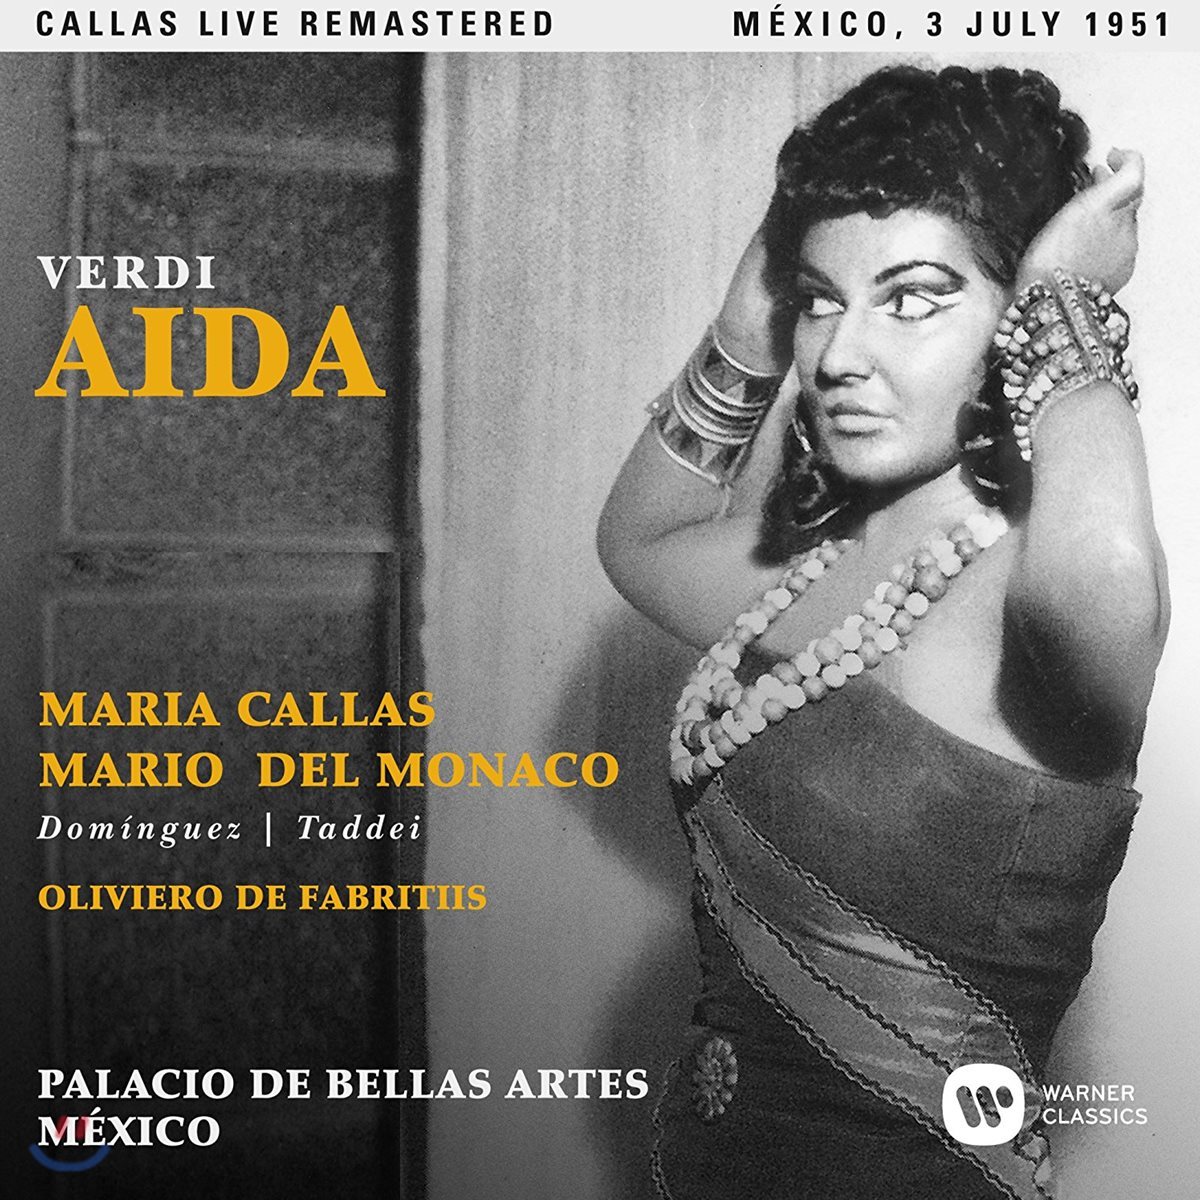 Maria Callas / Mario del Monaco 베르디: 아이다 - 마리아 칼라스, 마리오 델 모나코 / 1951년 멕시코 실황 (Verdi: Aida)